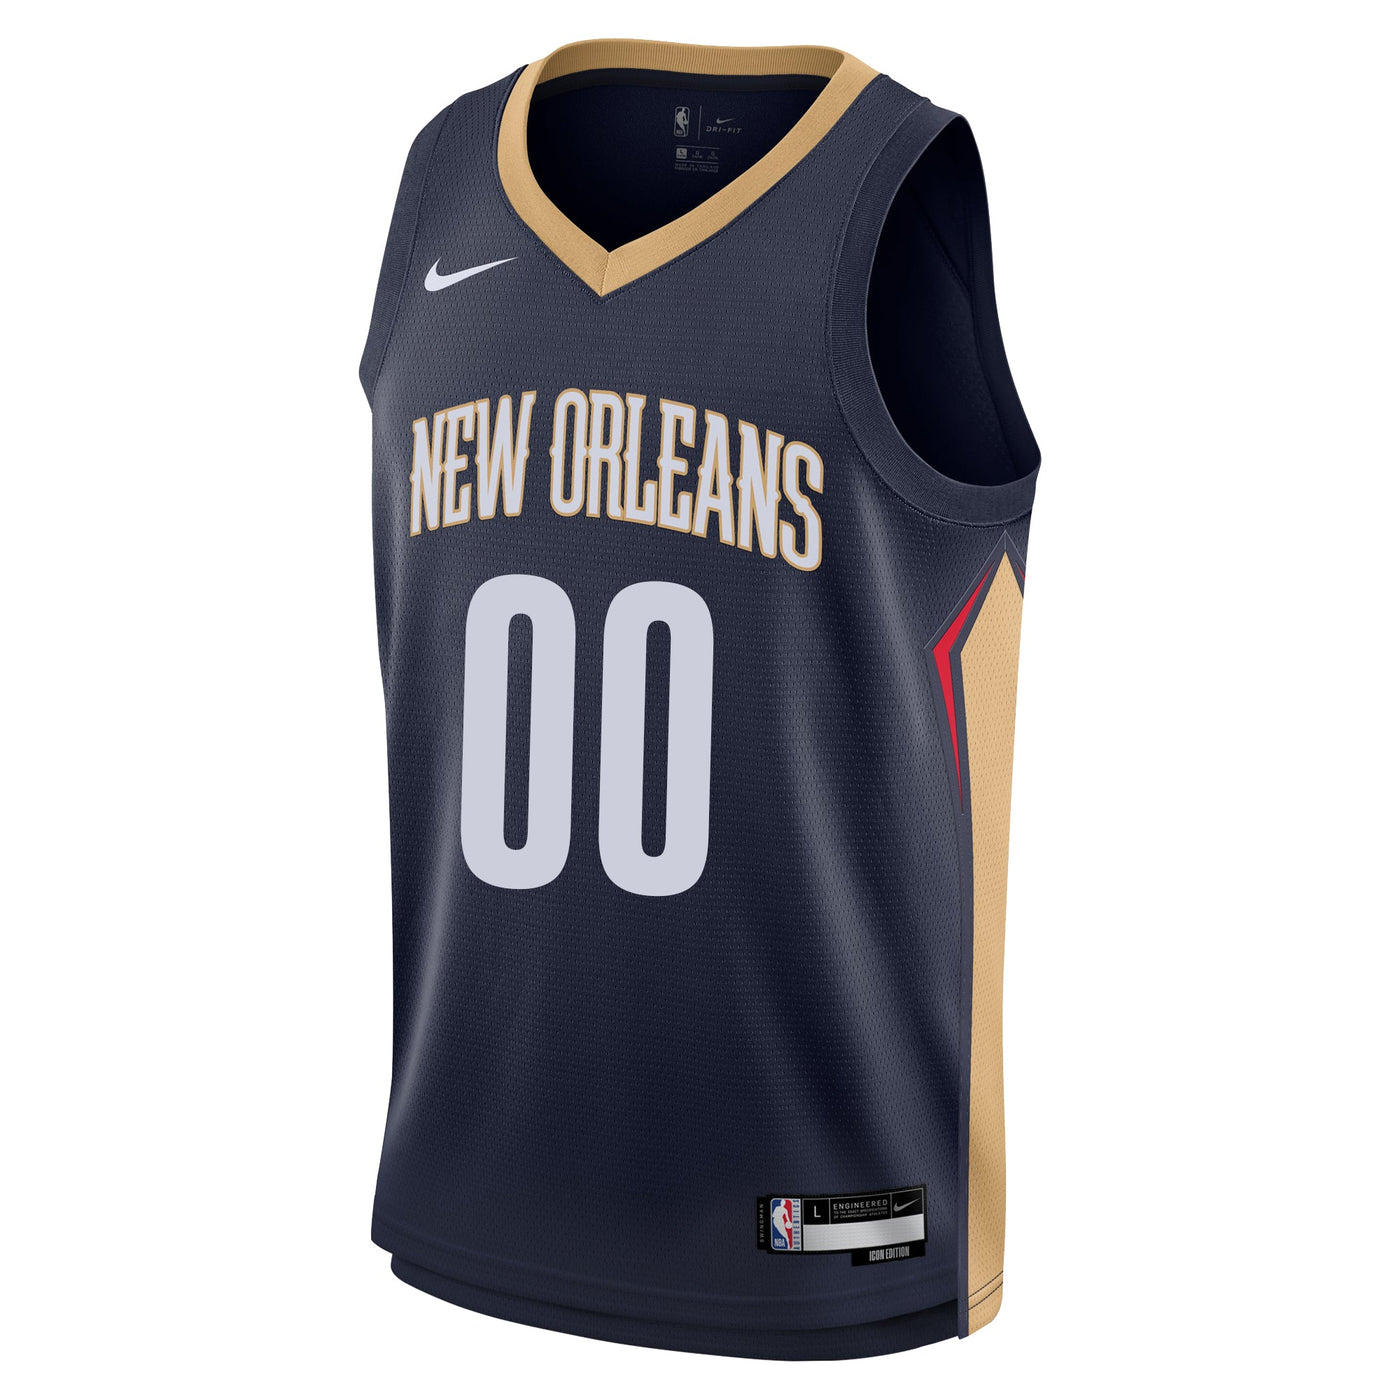 Boys New Orleans Pelicans Blank Icon Swingman Replica Custom Jersey